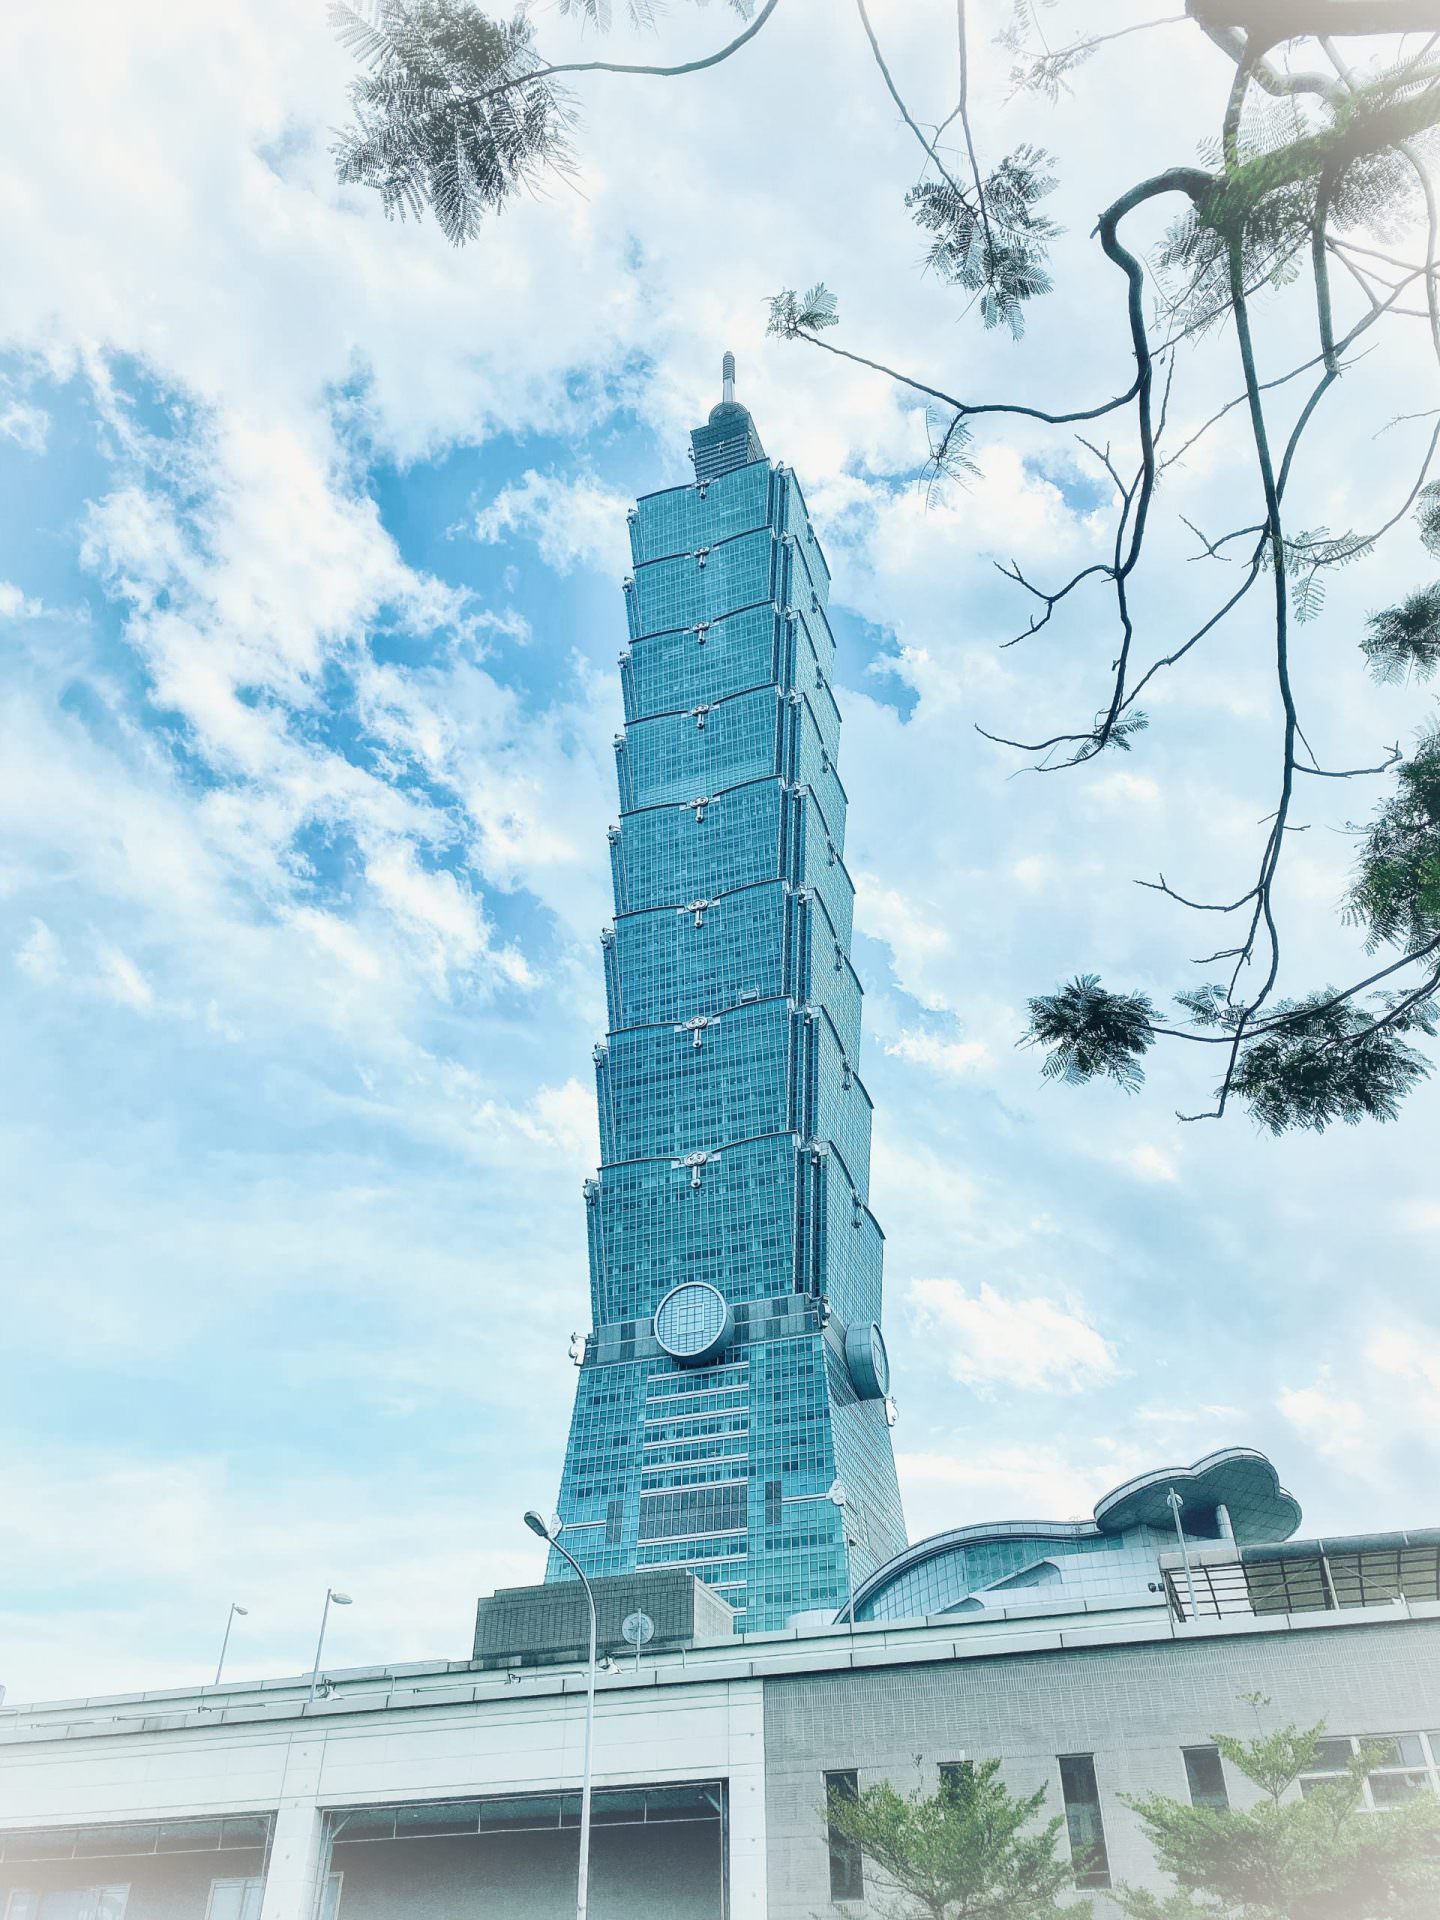 【開箱】台北101大樓35F Sky Park 打造全球最美頂級商辦，高樓景觀垂直社區 TAIPEI 101 Tower Level 35